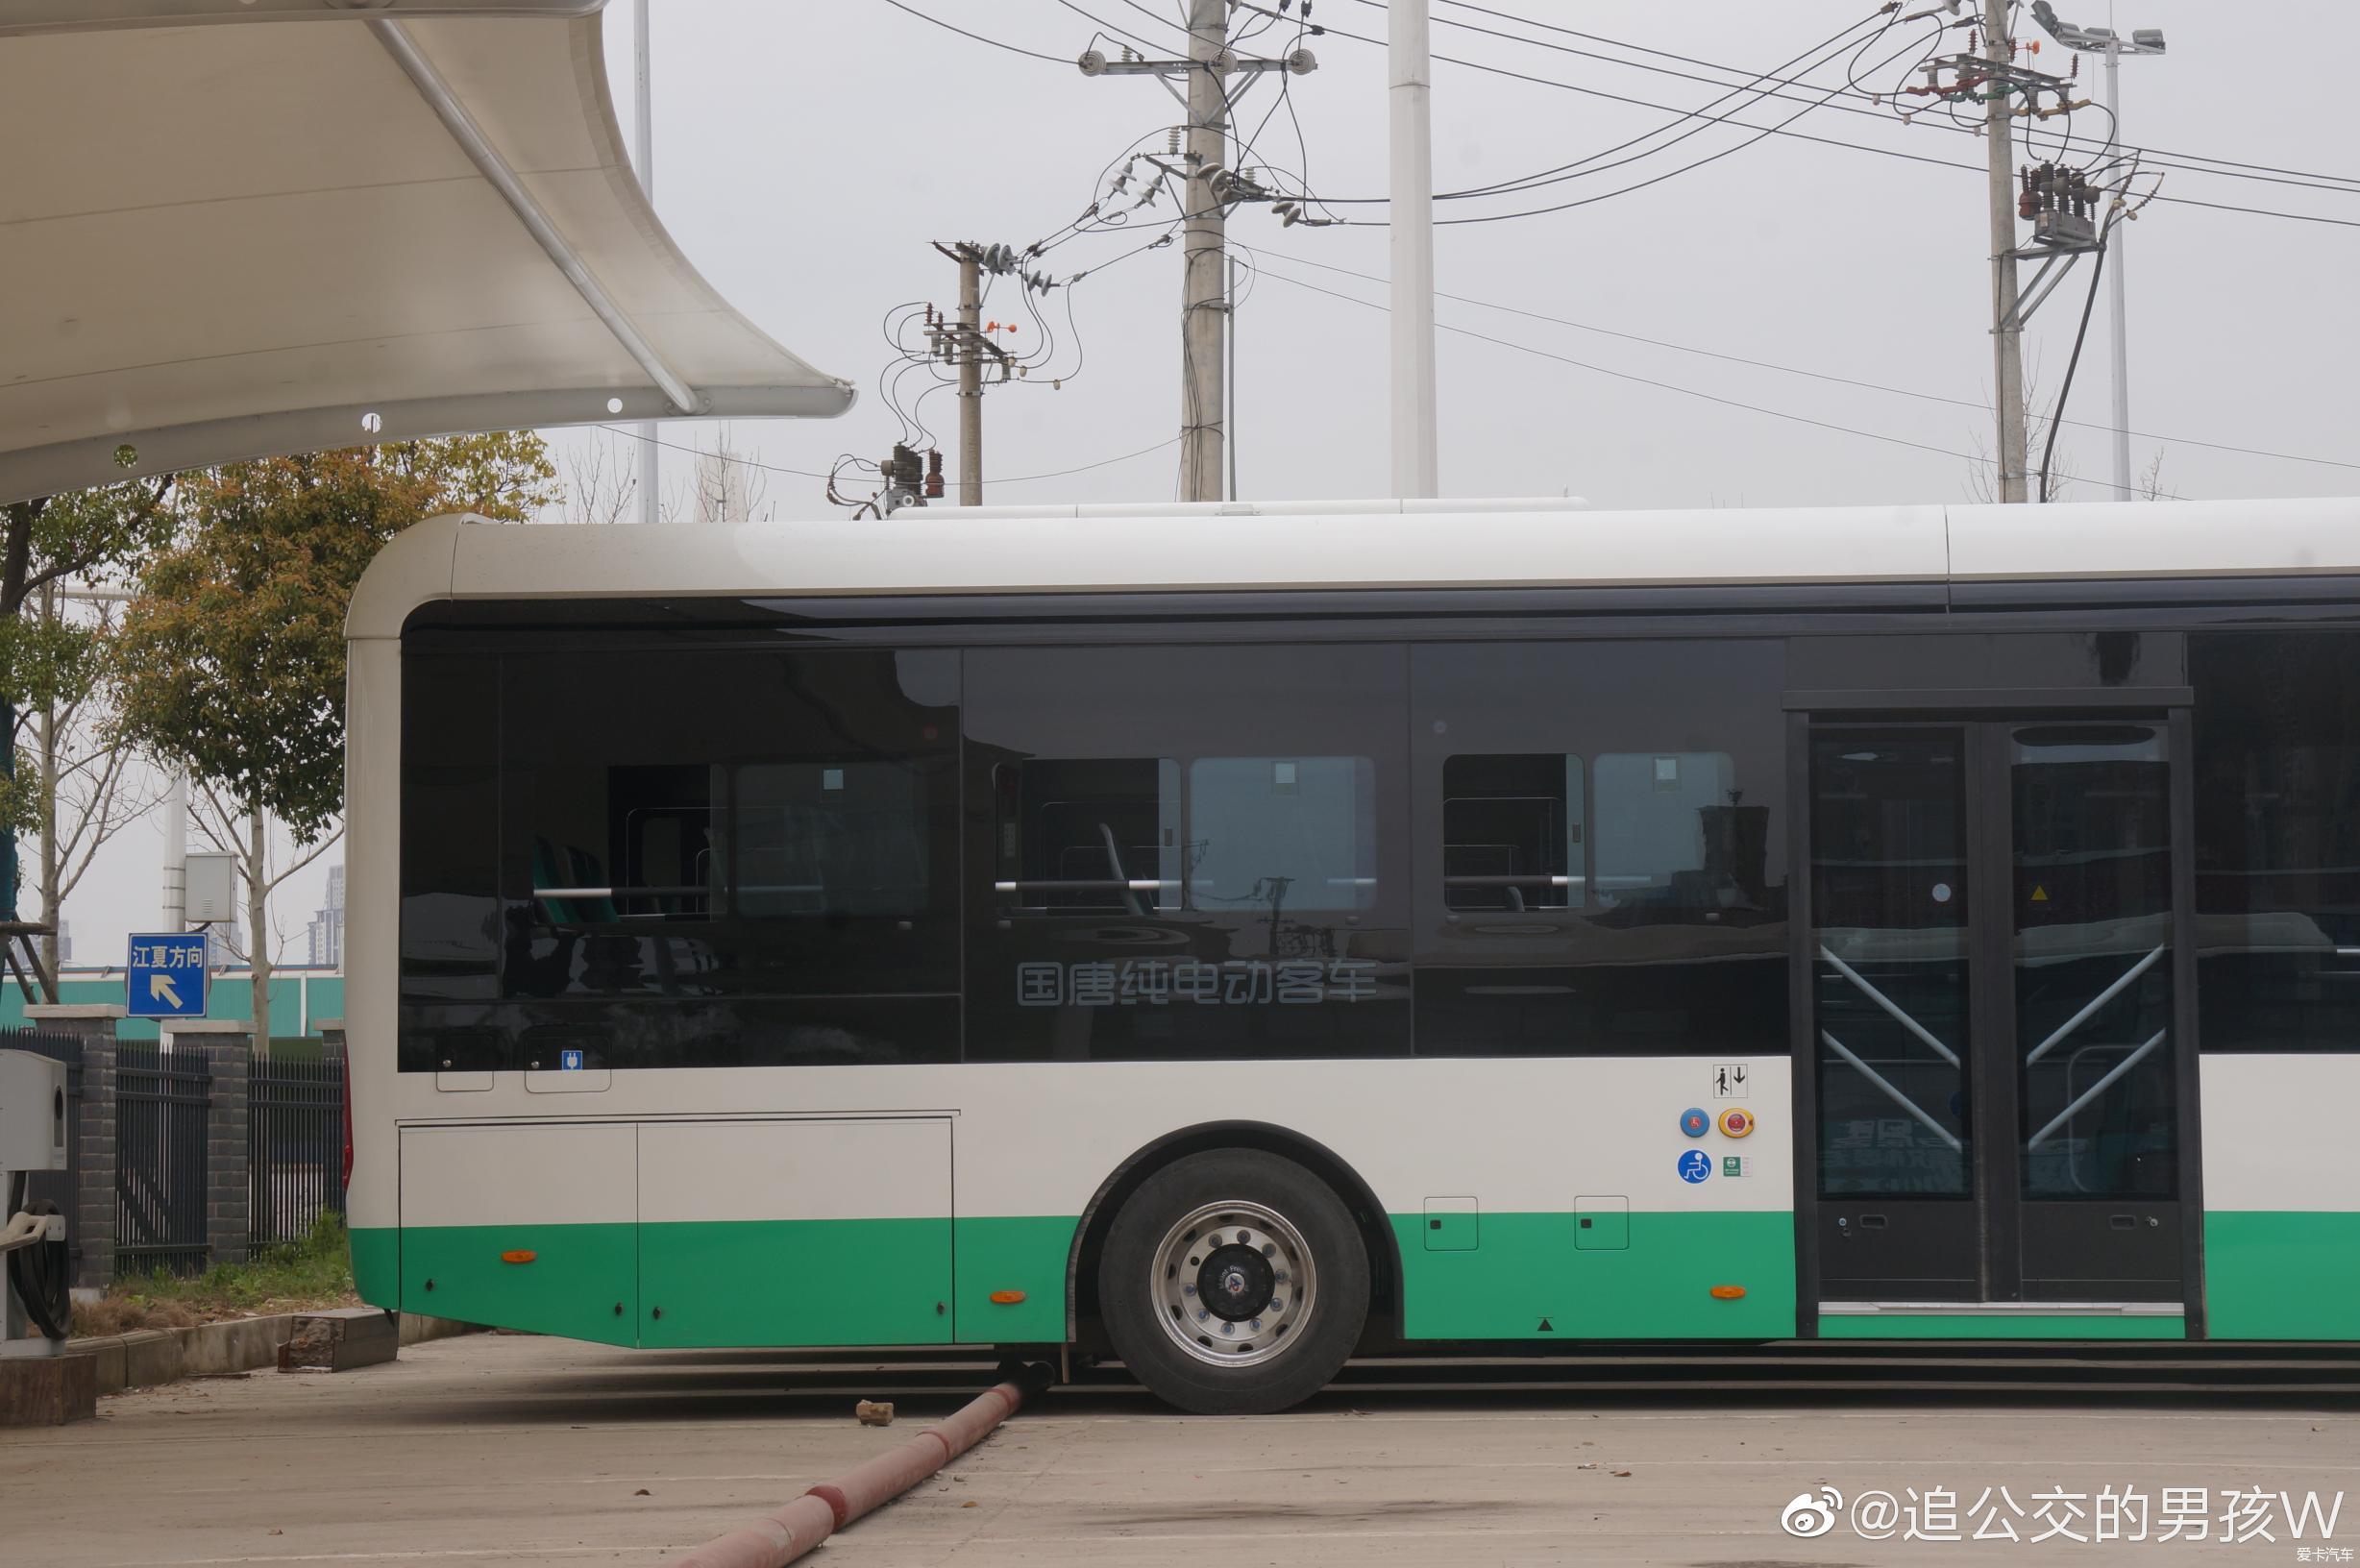 【迎新年】武汉公交集团公司新车型 国唐电动车-爱卡汽车网论坛